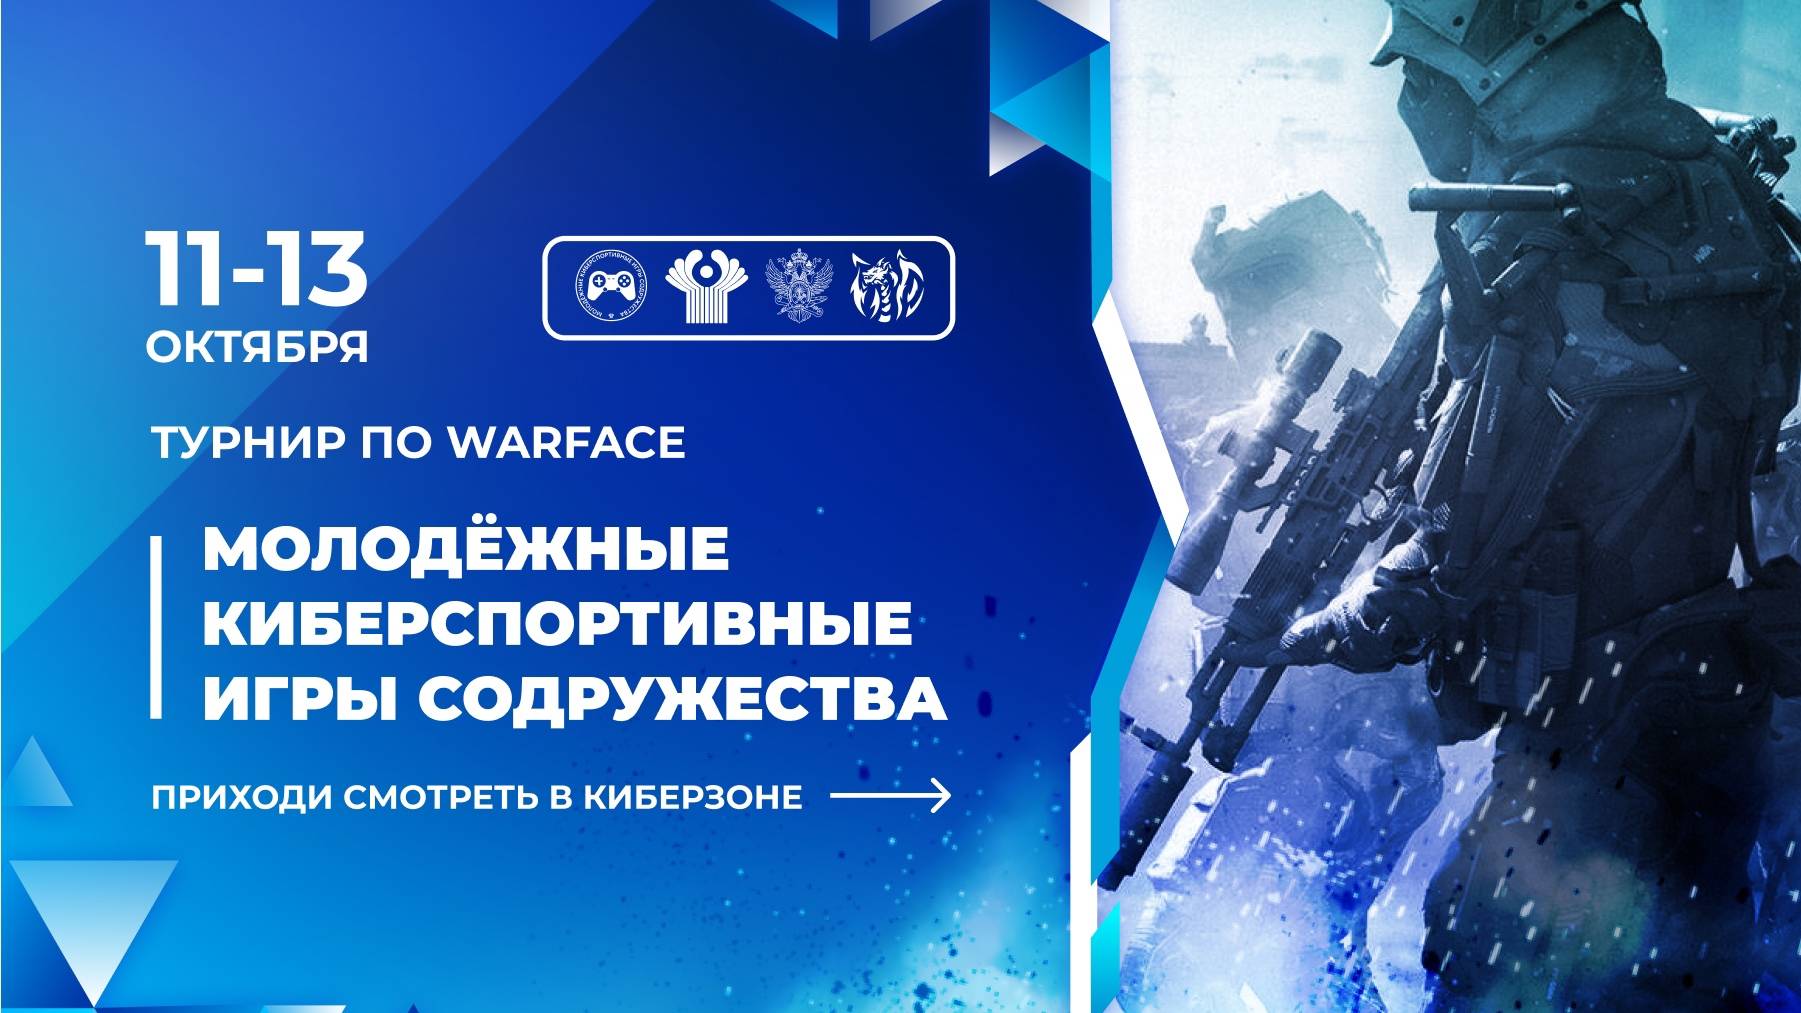 Молодежные киберспортивные игры содружества по дисциплине Warface | День 1